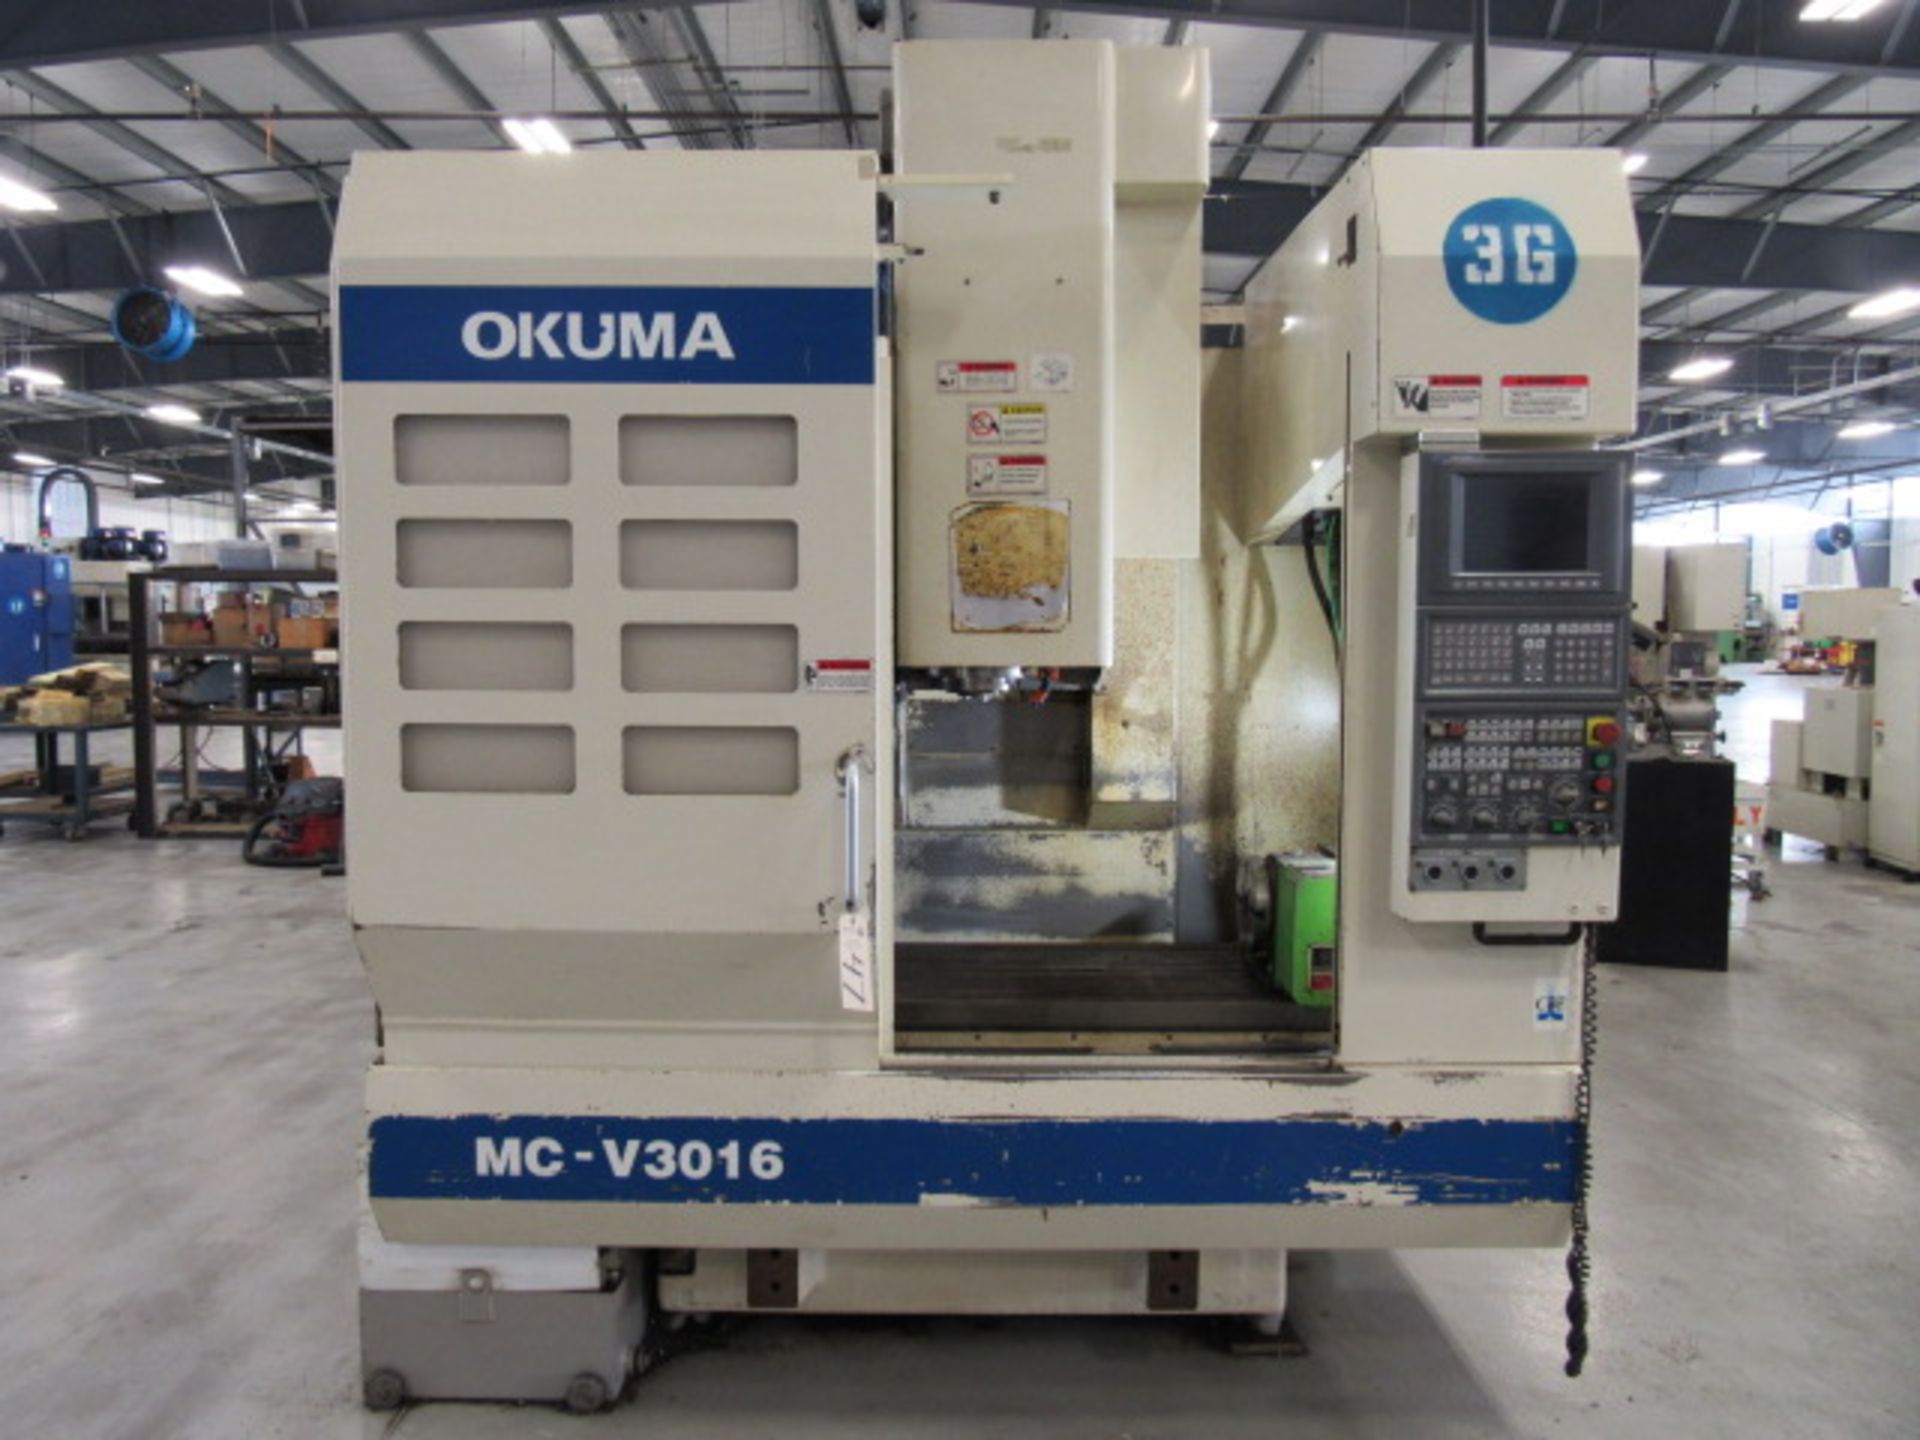 Okuma MC-V3016 CNC Vertical Machining Center - Image 3 of 5